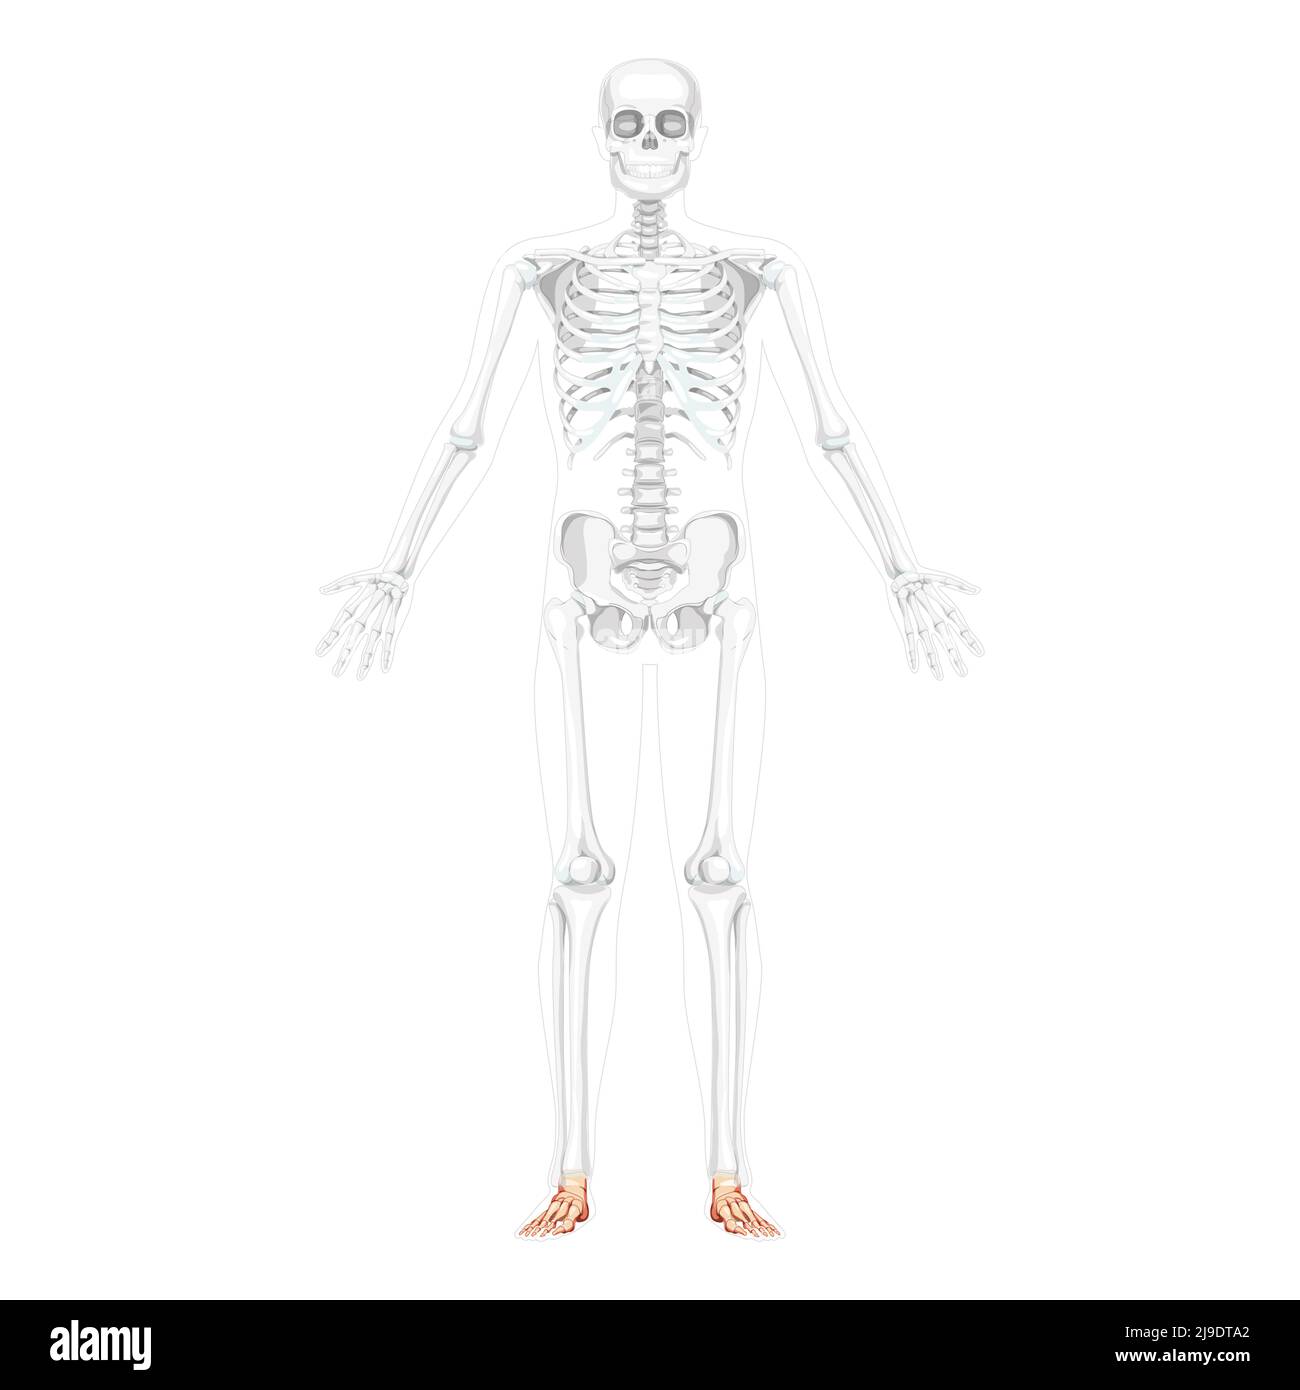 Scheletro piede e caviglia osso Vista frontale umana con due braccia aperte posa con ossa parzialmente trasparenti. 3D disegno vettoriale di colore naturale piatto realistico dell'anatomia isolata su sfondo bianco Illustrazione Vettoriale